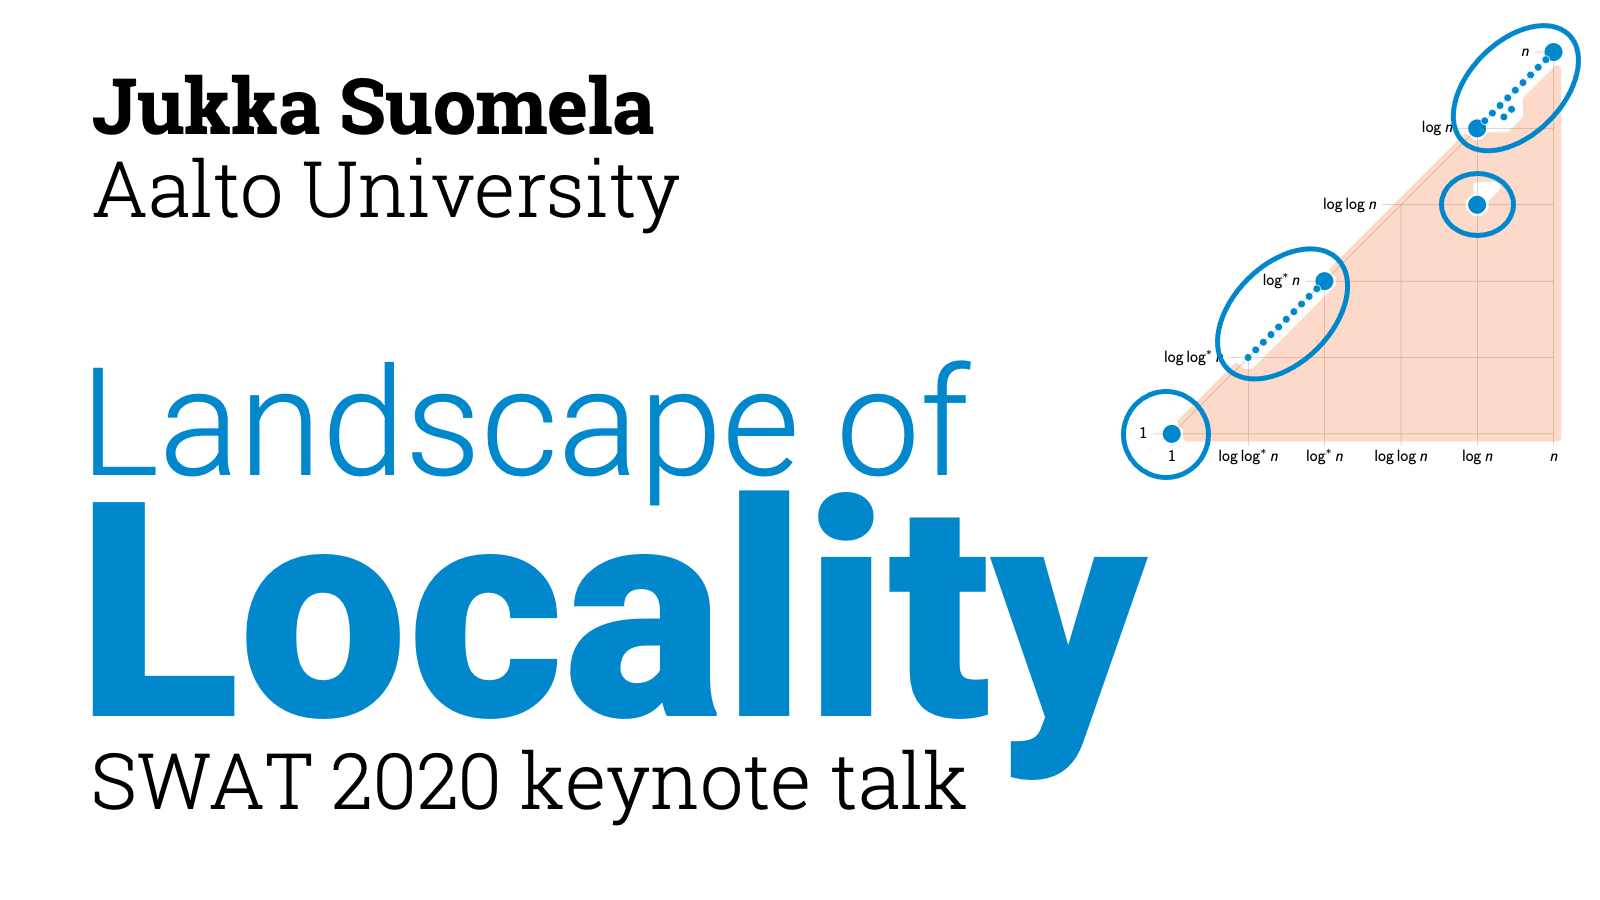 Landscape of Locality (SWAT 2020 keynote talk)